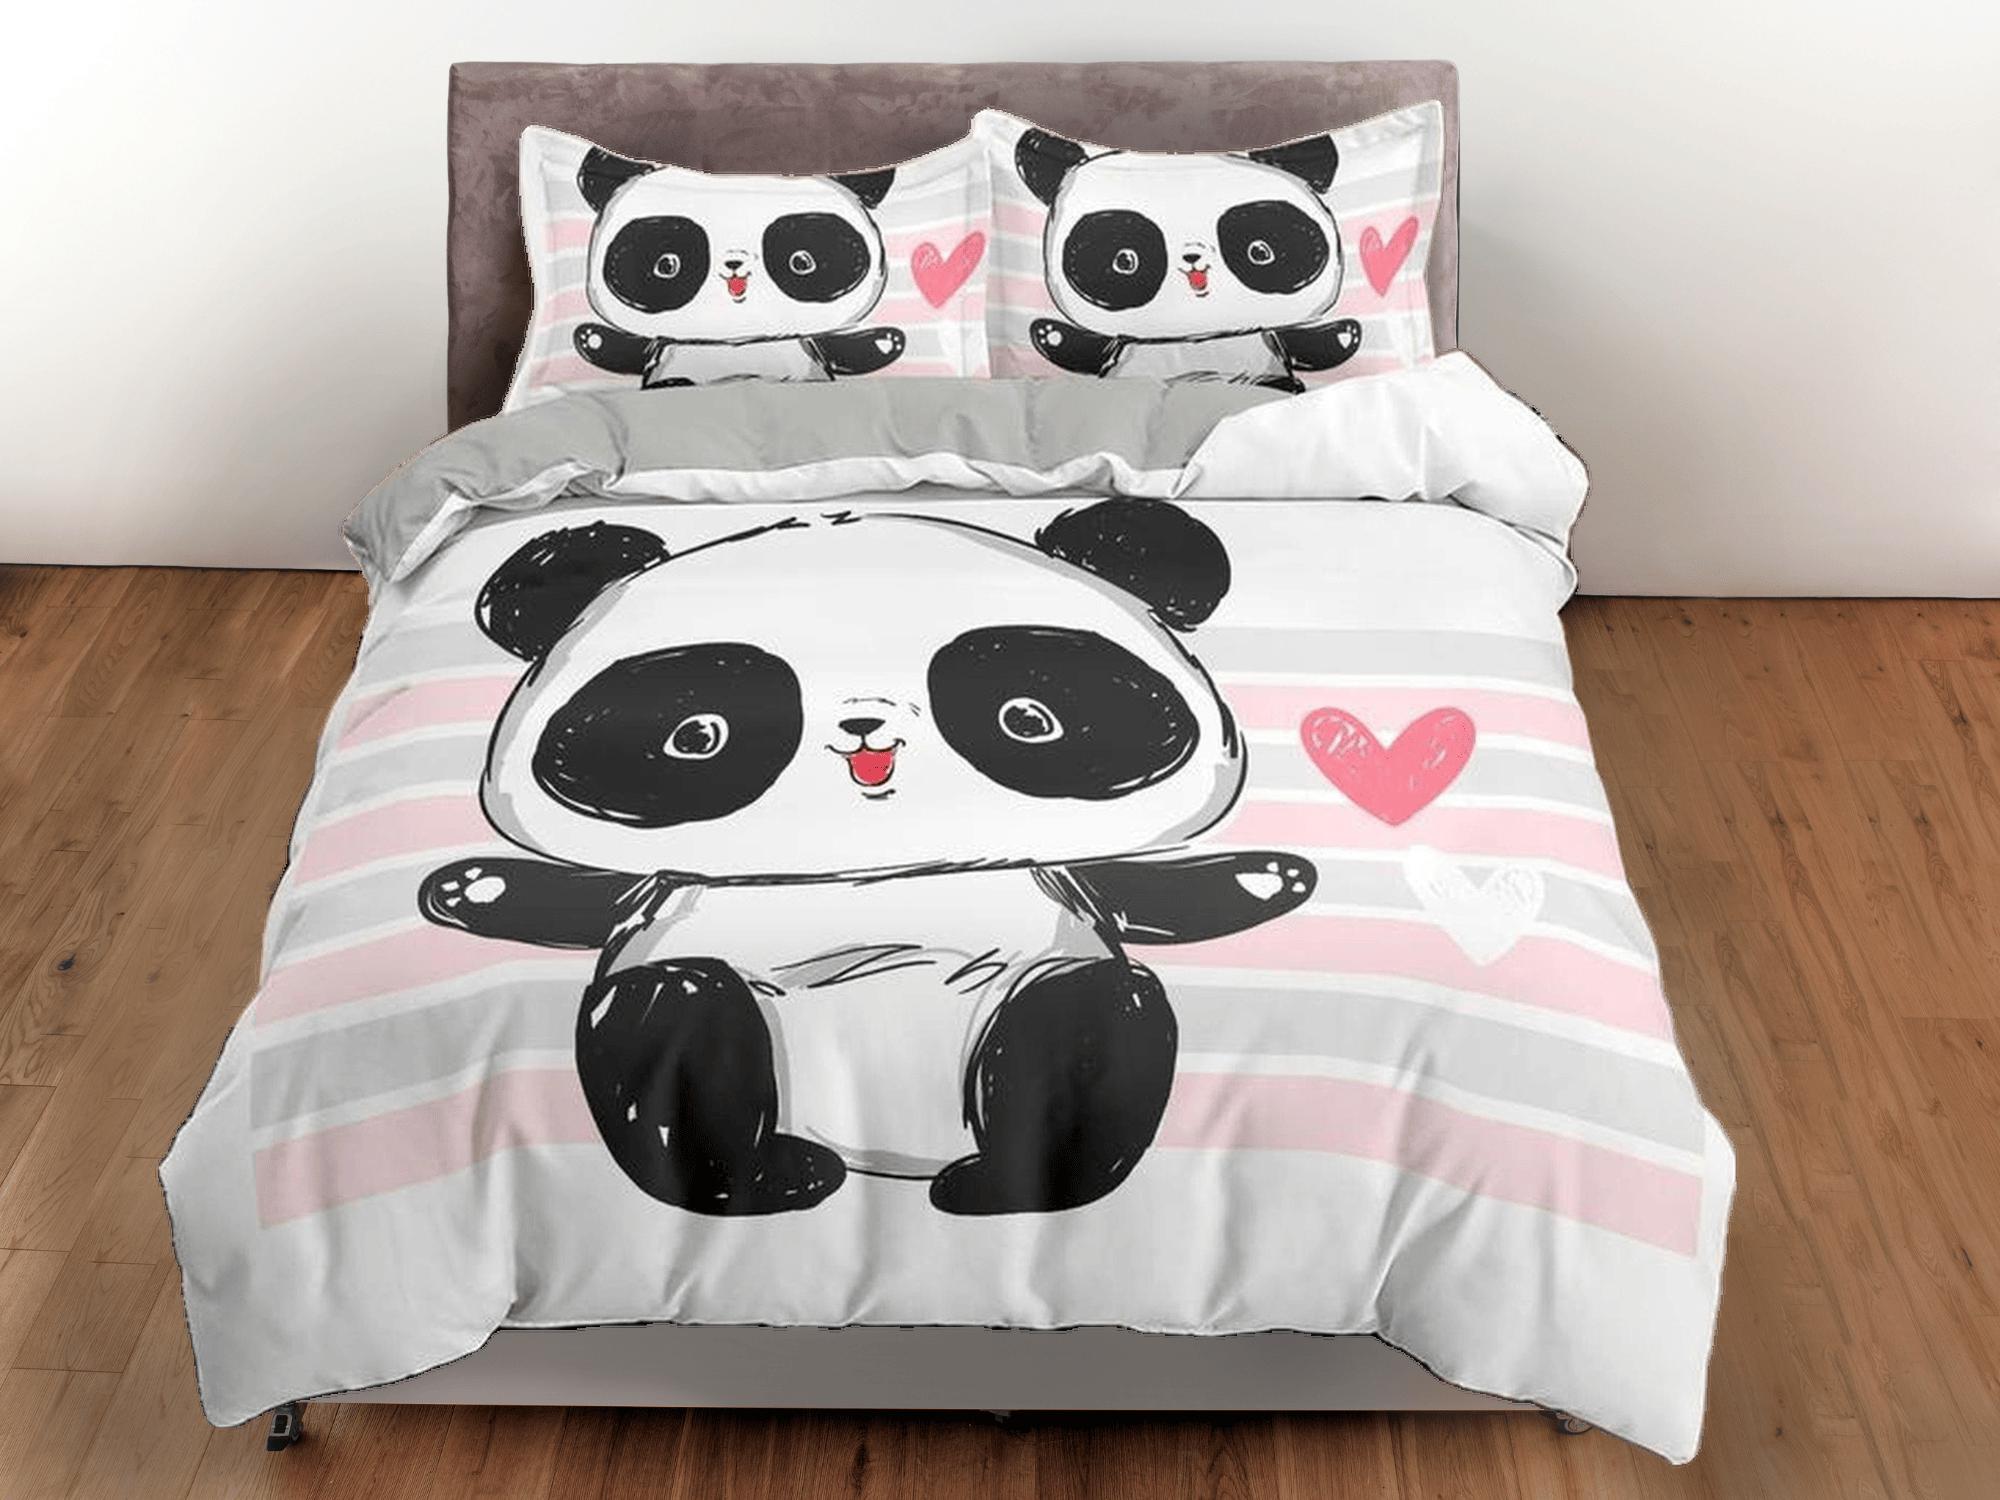 daintyduvet Cute baby panda duvet cover for kids, bedding set full, king, queen, dorm bedding, toddler bedding, aesthetic bedspread, panda lovers gift